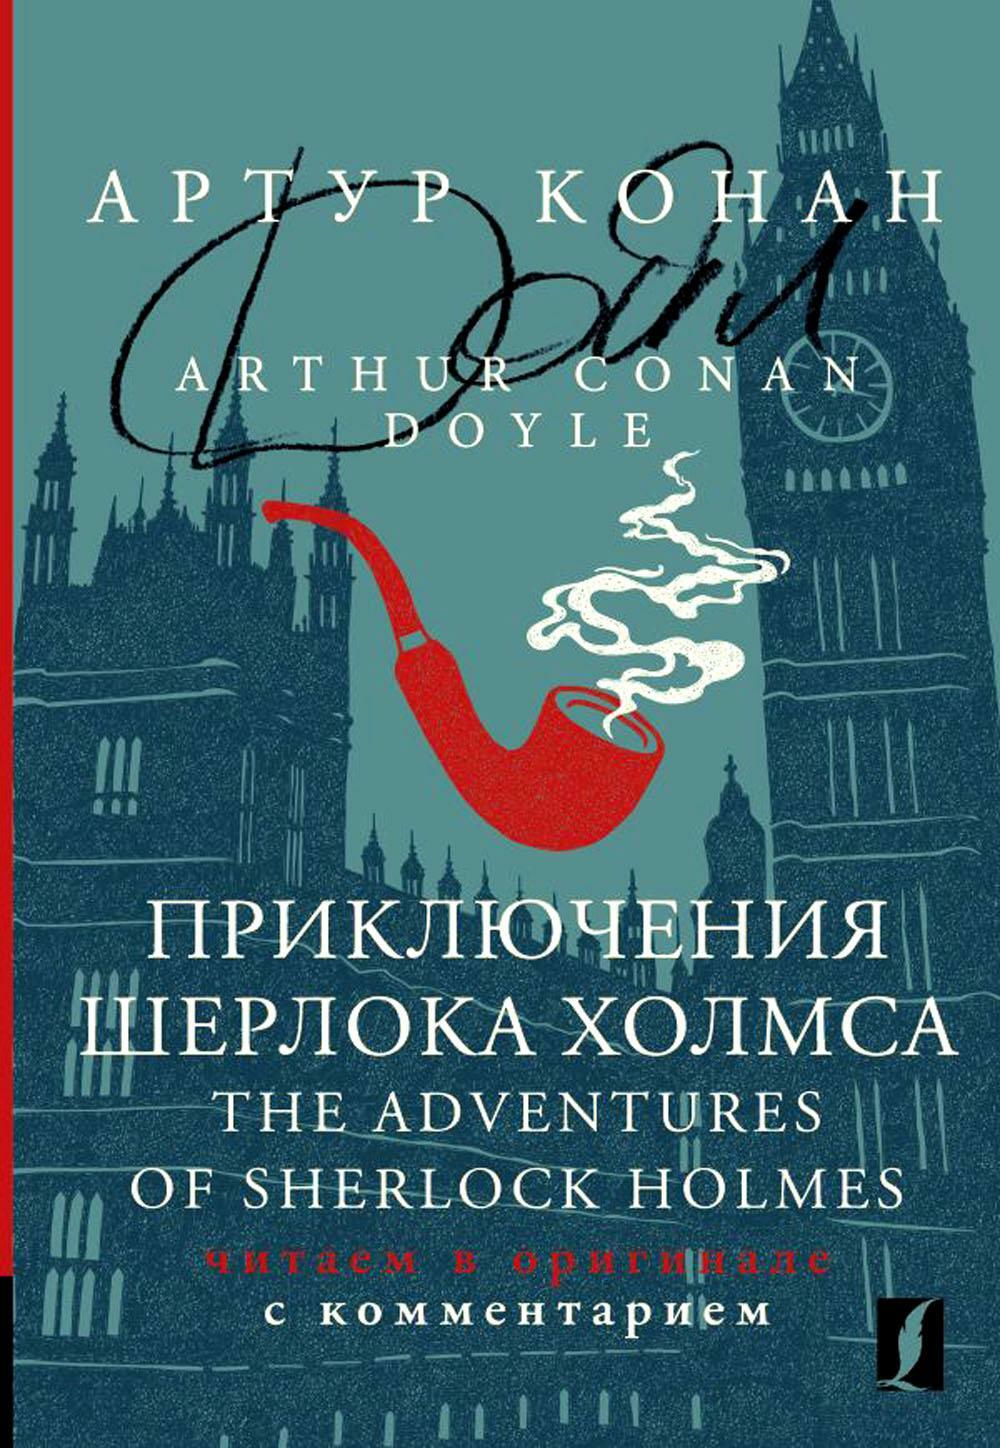 Приключения Шерлока Холмса. The Adventures of Sherlock Holmes: читаем в оригинале с комментарием